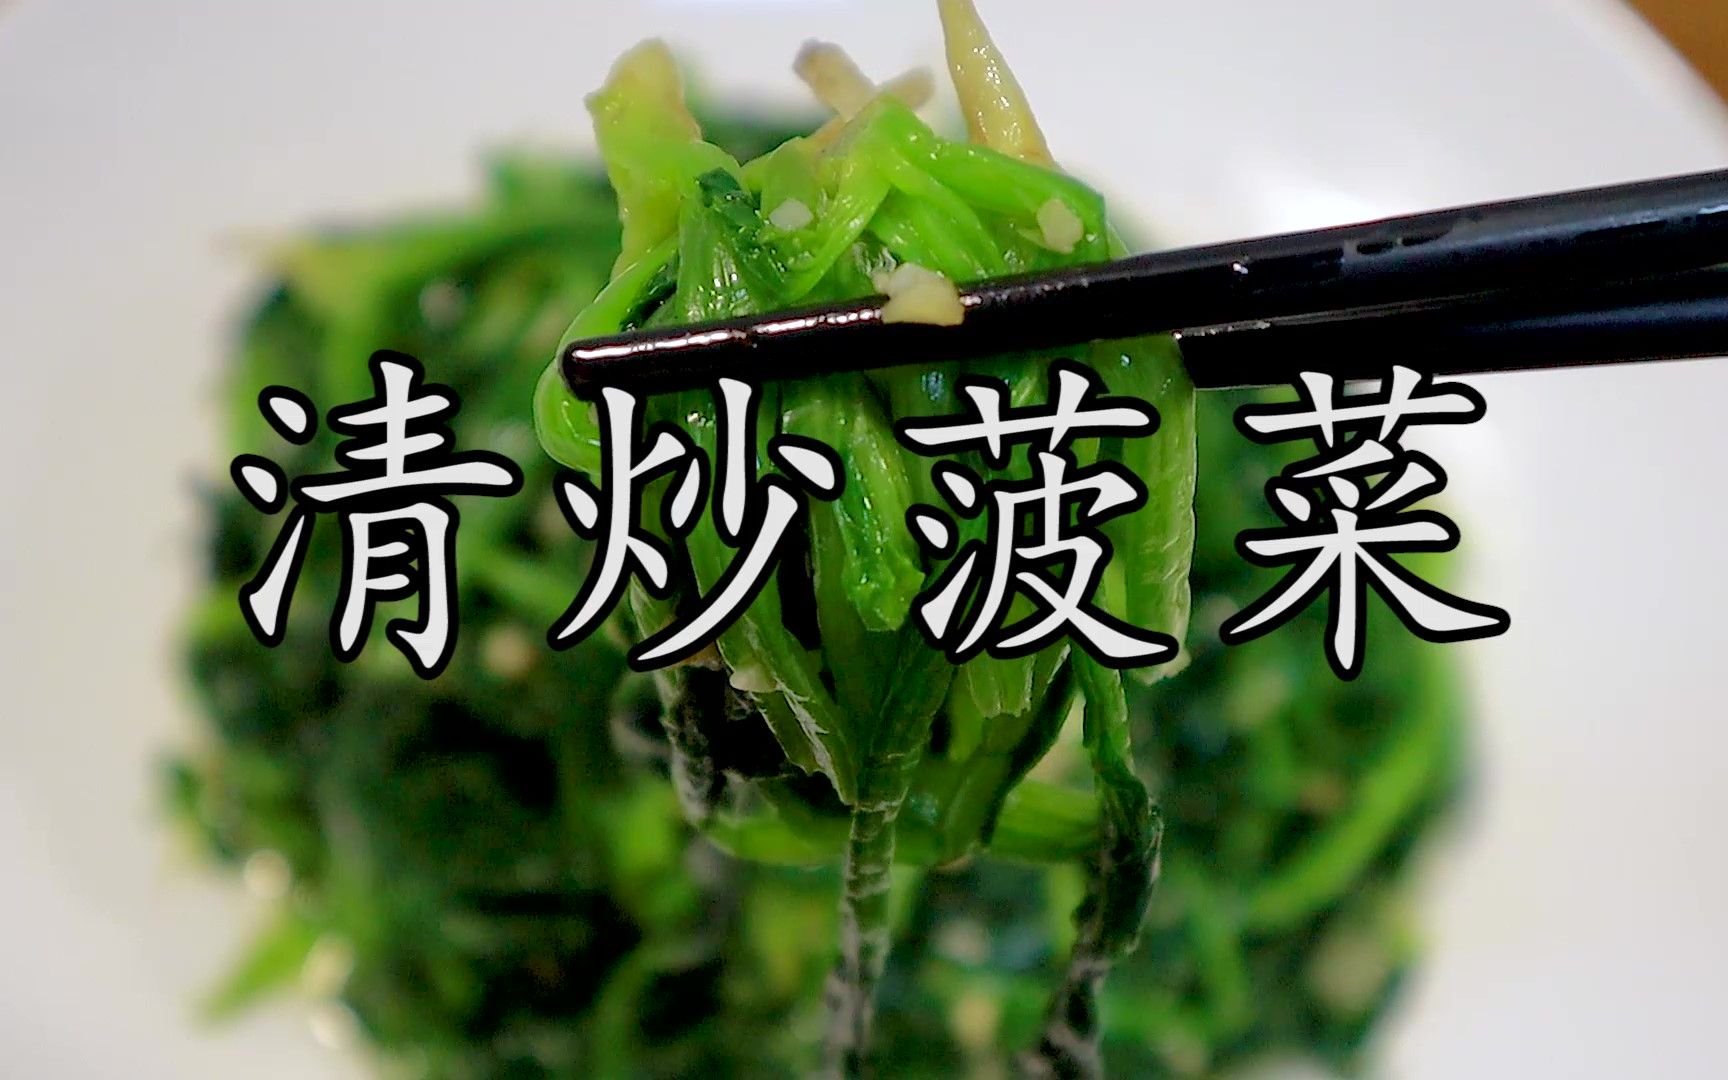 清炒菠菜到底需不需要焯水？菠菜翠绿少水无涩味，这才是清炒菠菜最科学、最简单、最香滑的做法，没有之一。